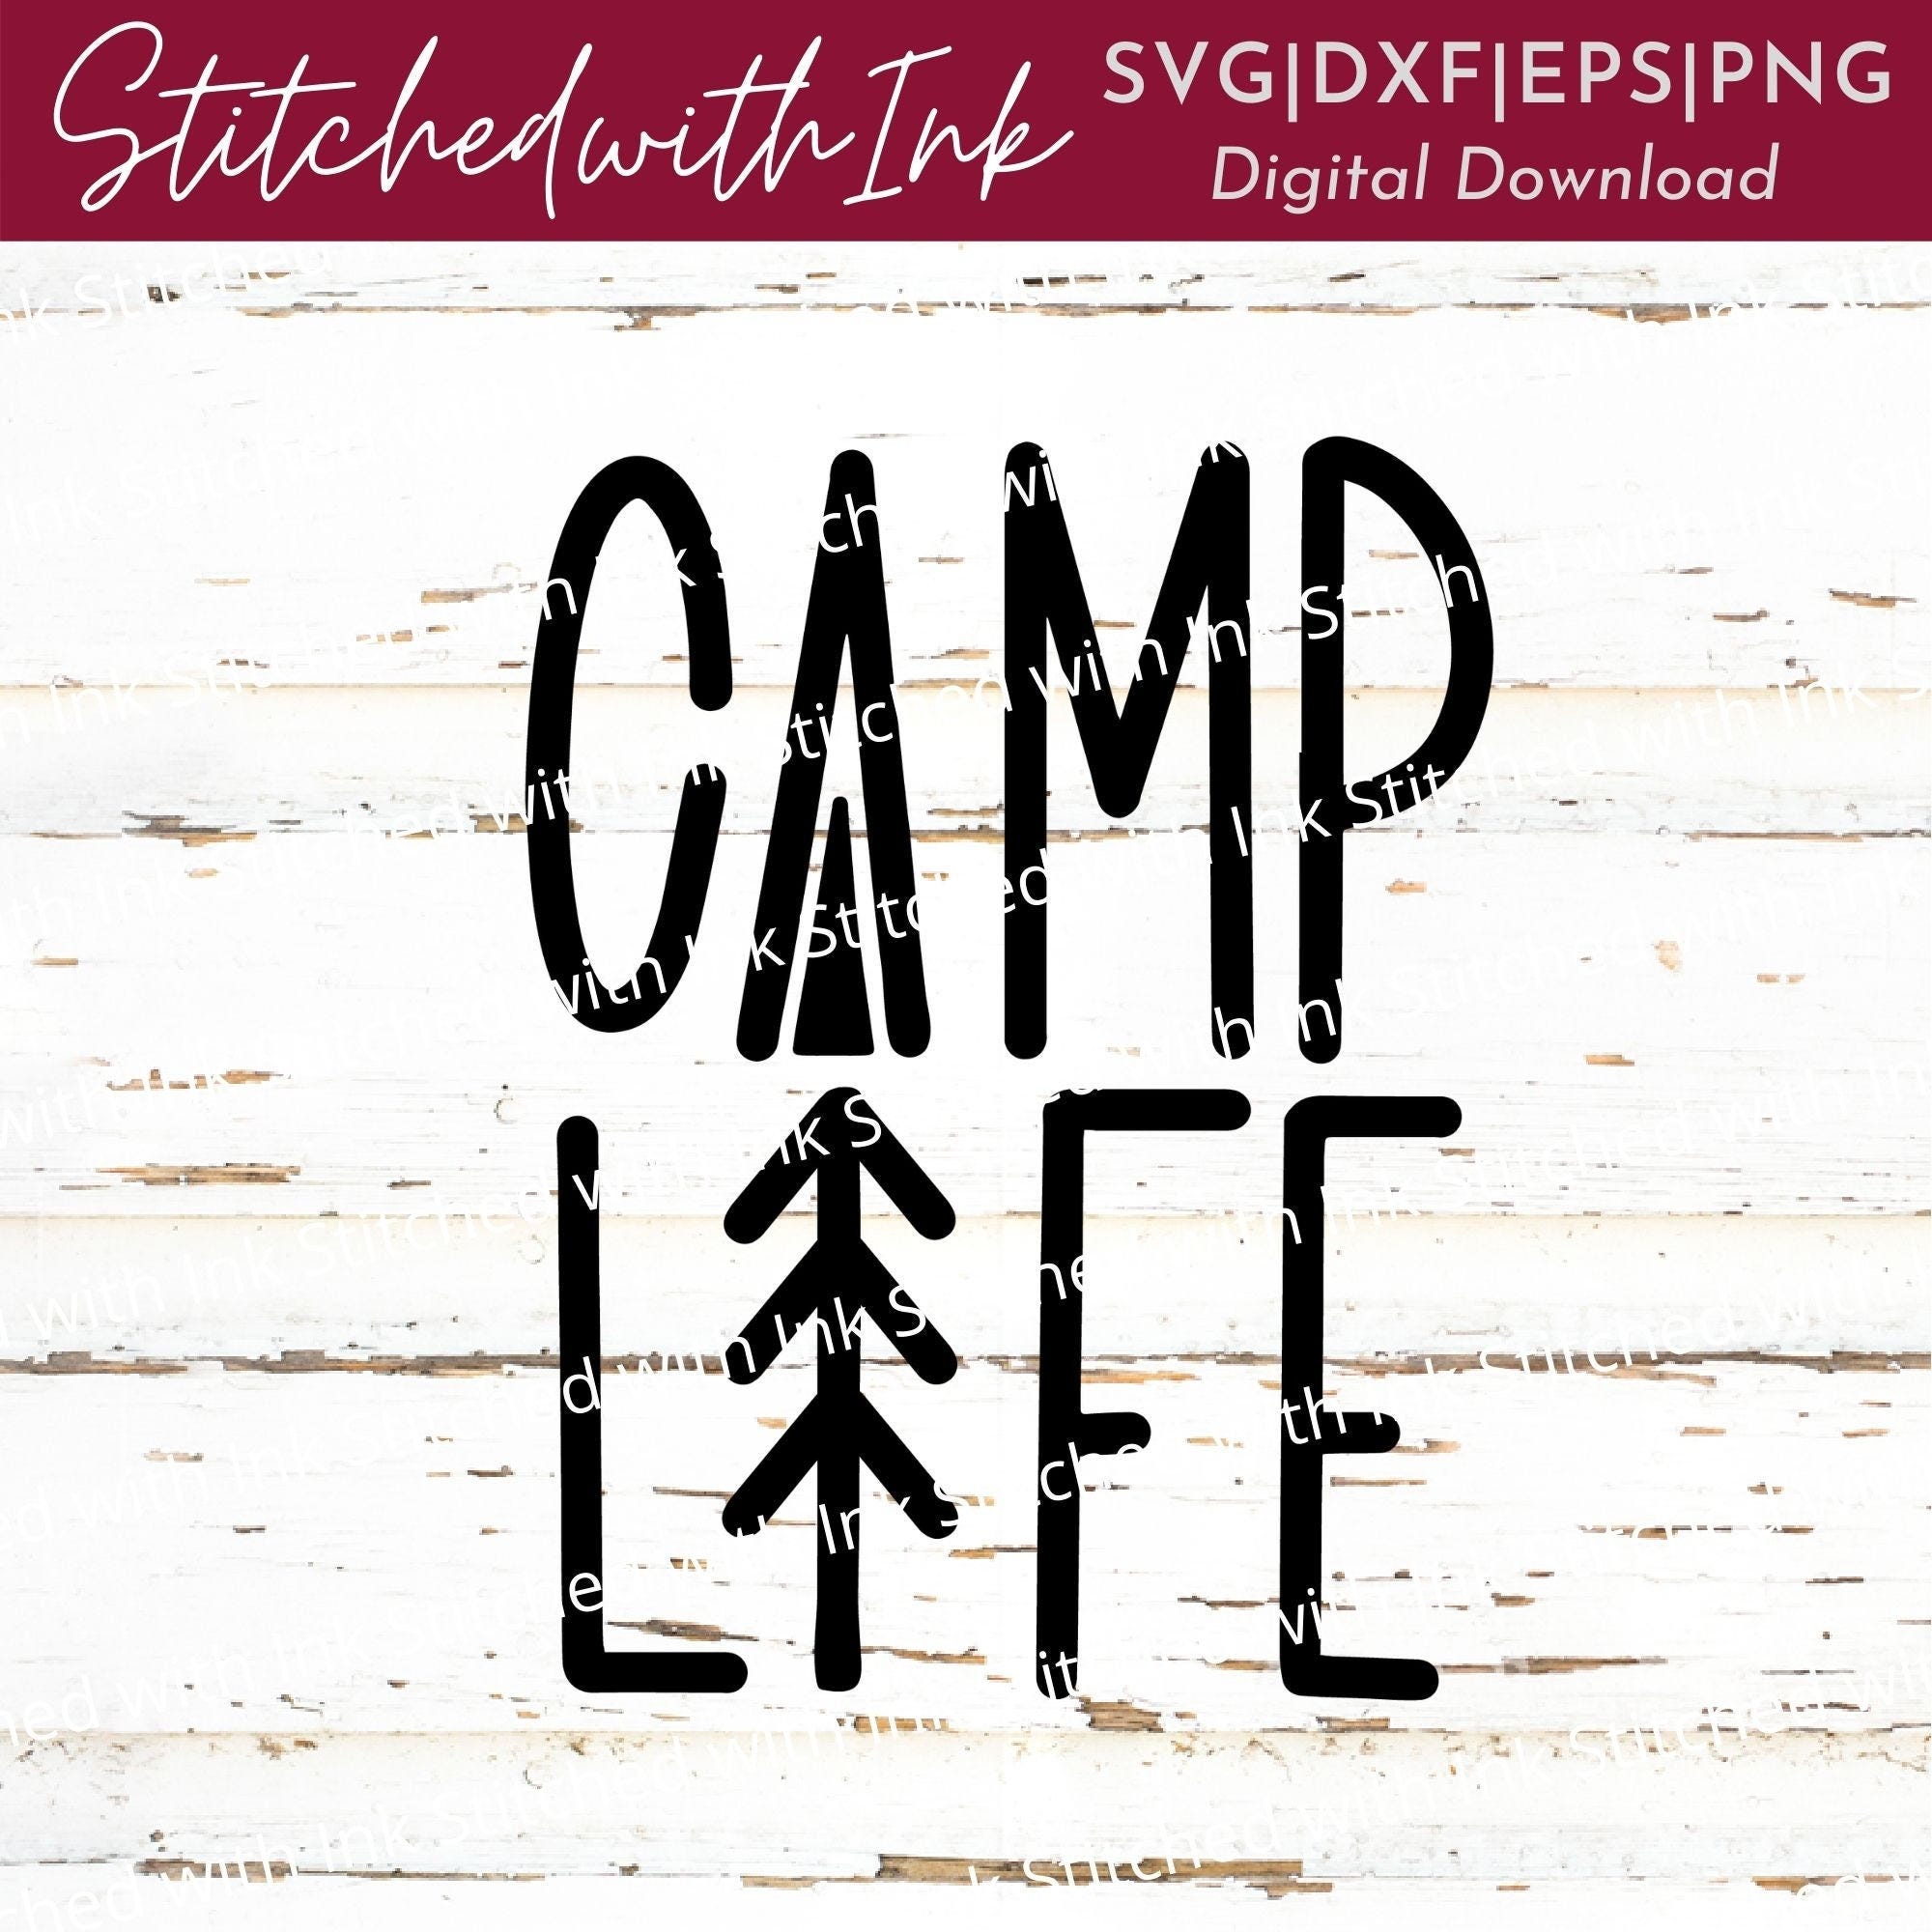 Camp Life Svg, Camping Svg, Camping Life Svg, Camp life Png, Tree Svg, Camp Svg, Adventure Svg, Happy camper Svg, Mountain Svg